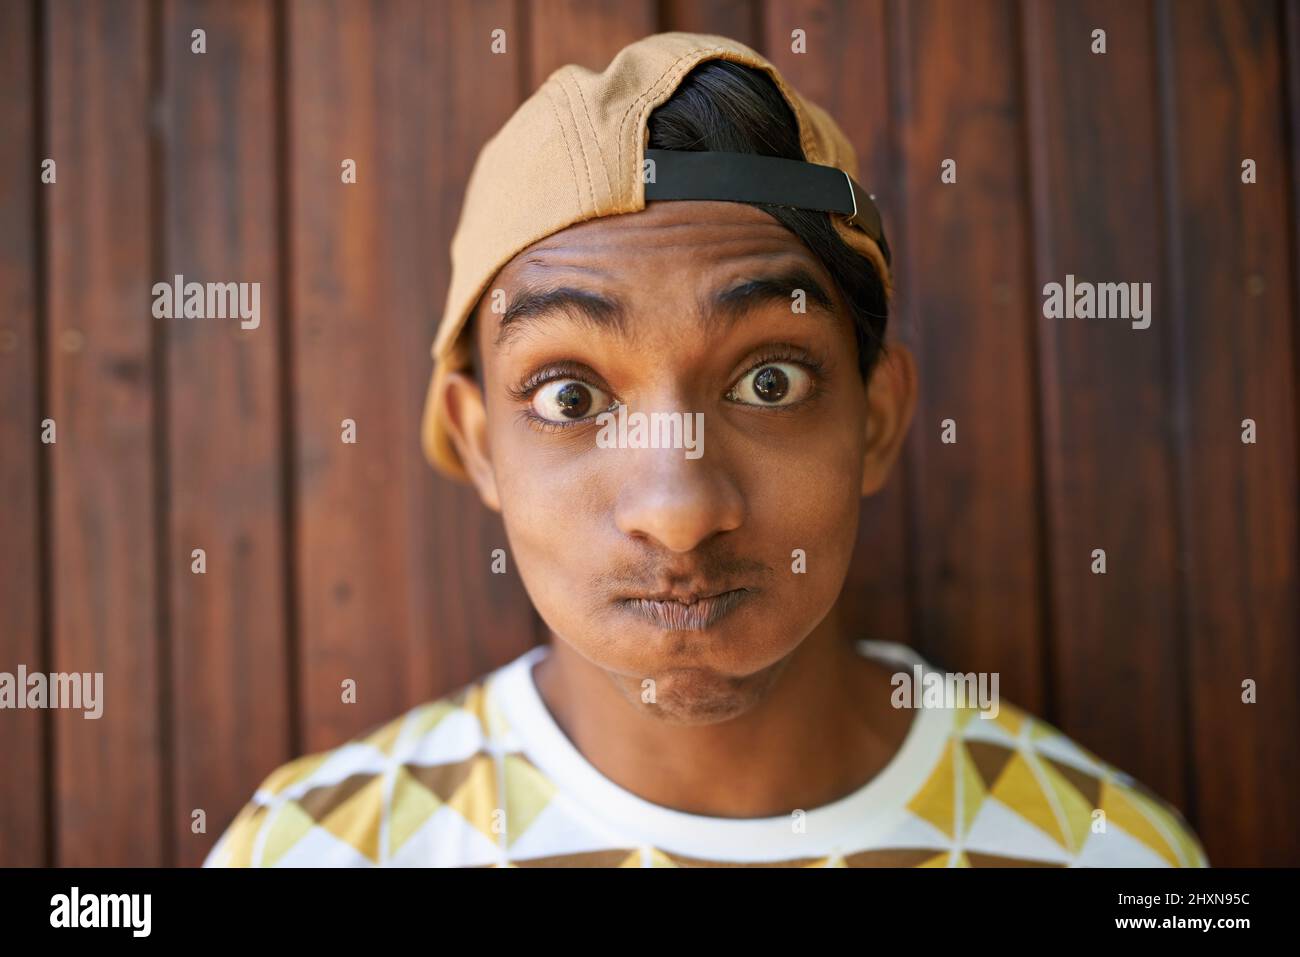 Seien Sie nie zu ernst. Porträt eines Jungen im Teenageralter, der ein Gesicht macht, während er gegen eine Holzwand steht. Stockfoto